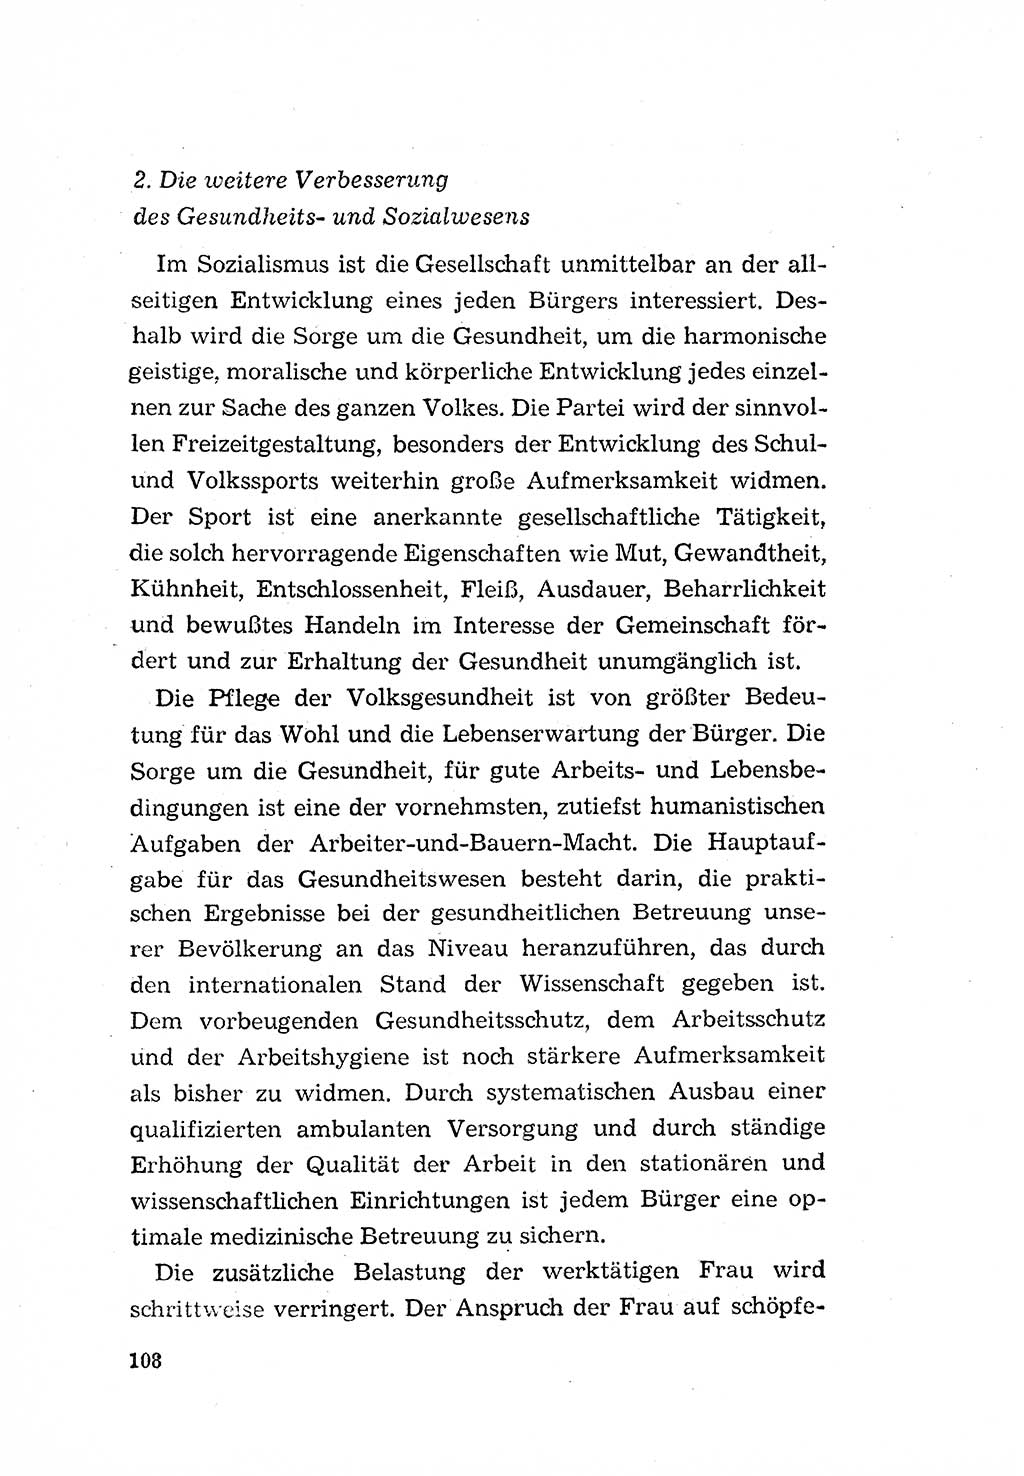 Programm der Sozialistischen Einheitspartei Deutschlands (SED) [Deutsche Demokratische Republik (DDR)] 1963, Seite 108 (Progr. SED DDR 1963, S. 108)